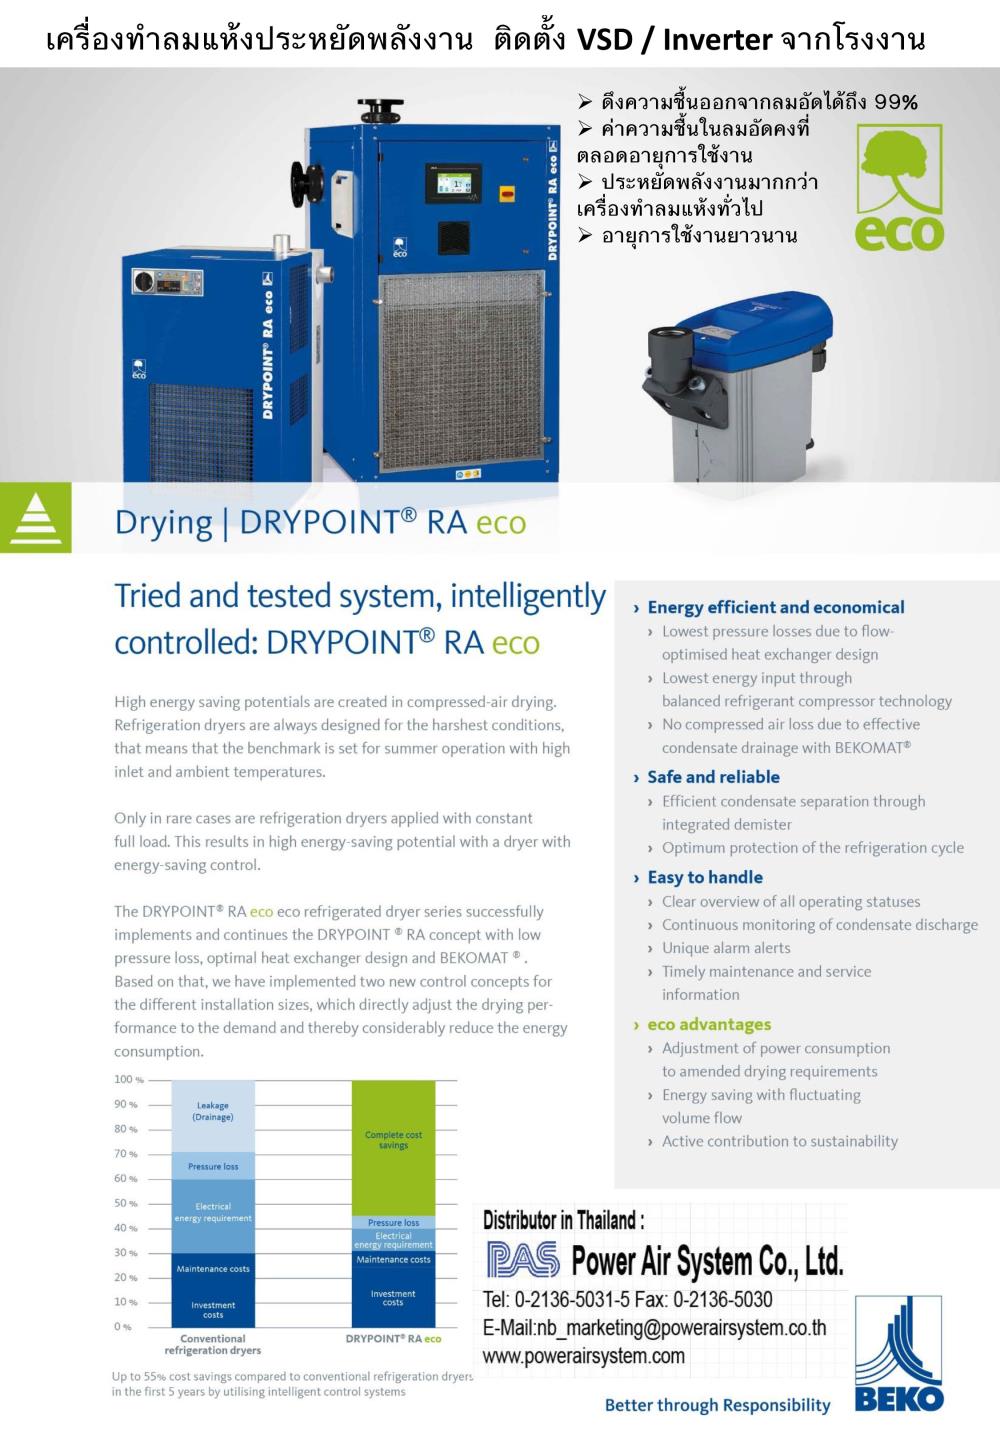 เครื่องทำลมแห้งแบบใช้น้ำยาทำความเย็น BEKO VSD – DRYPOINT RA eco Air Dryer ประสิทธิภาพสูงจากเยอรมัน ,air Dryer,BEKO,Machinery and Process Equipment/Dryers